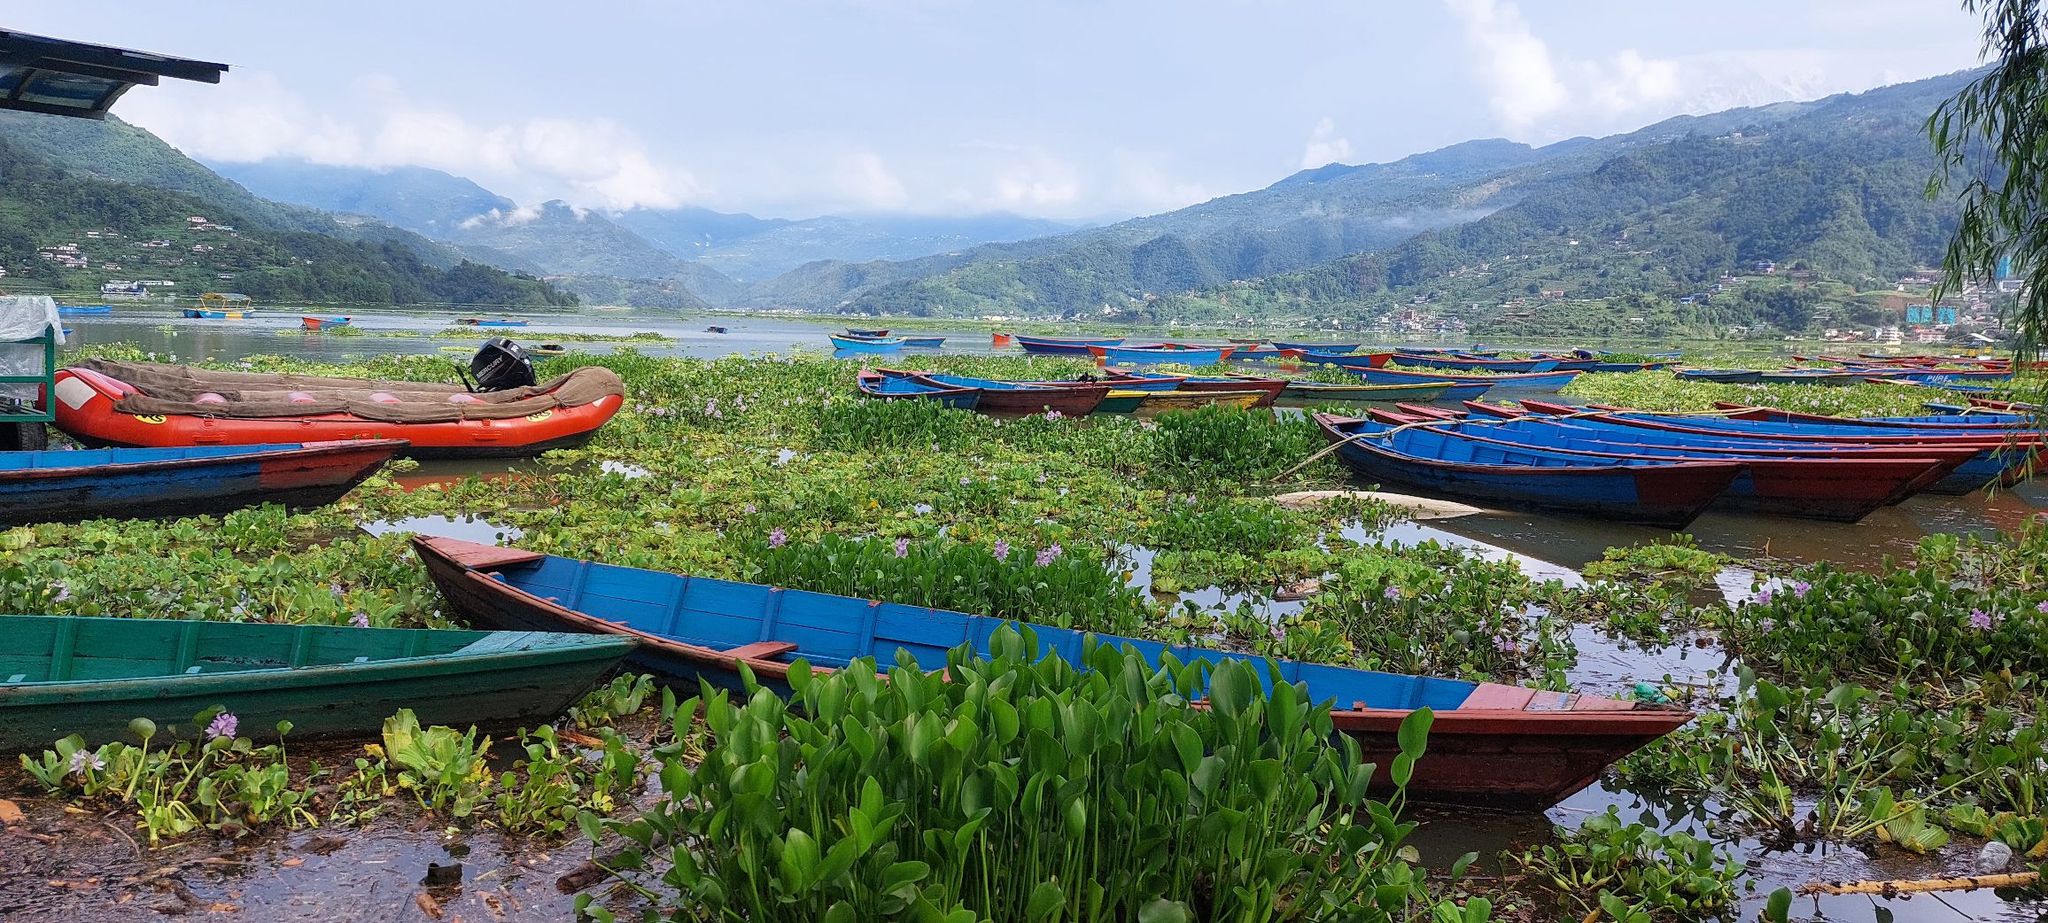 Water hyacinth covers Phewa Lake (photos)